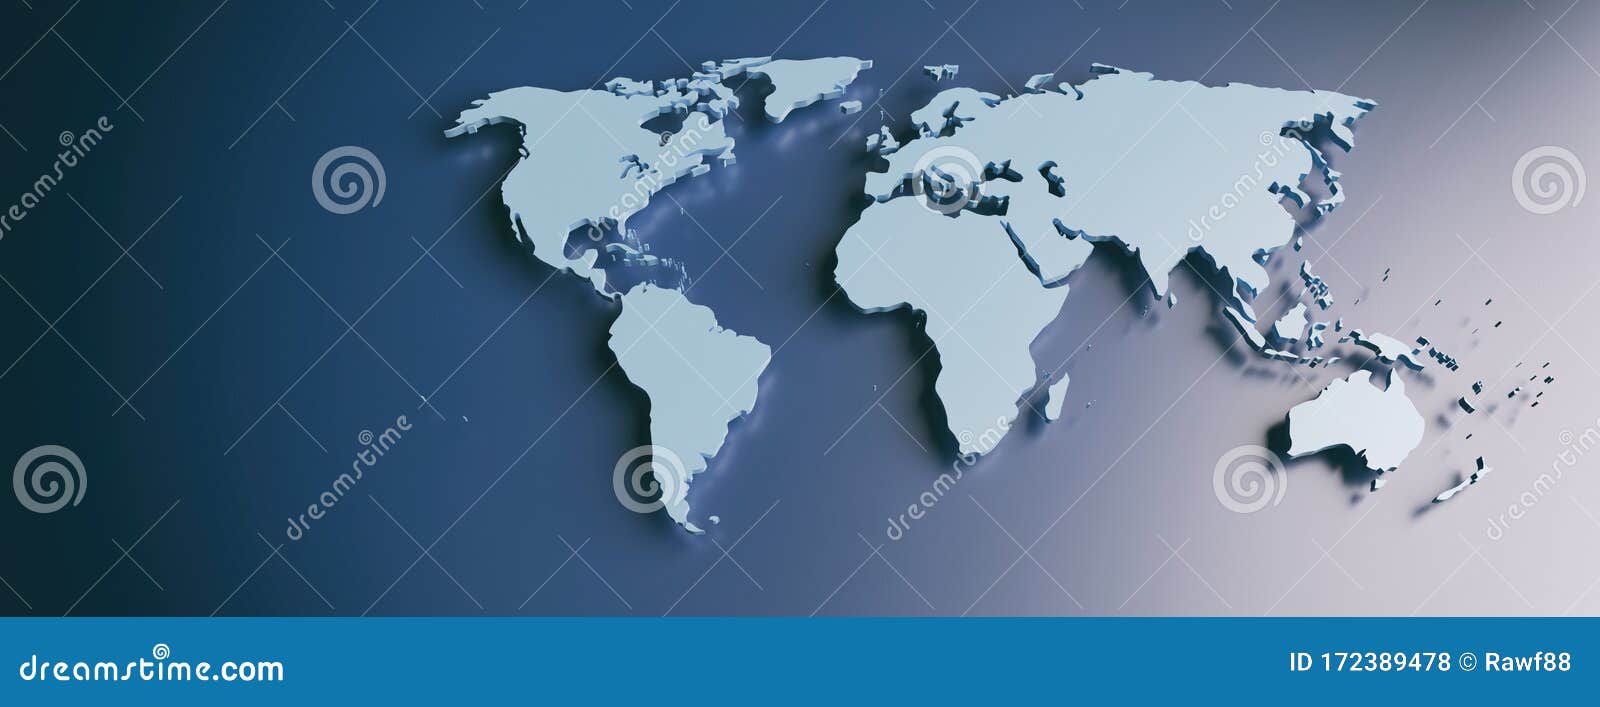 Mapa mundi por continentes en verde y azul Stock Vector